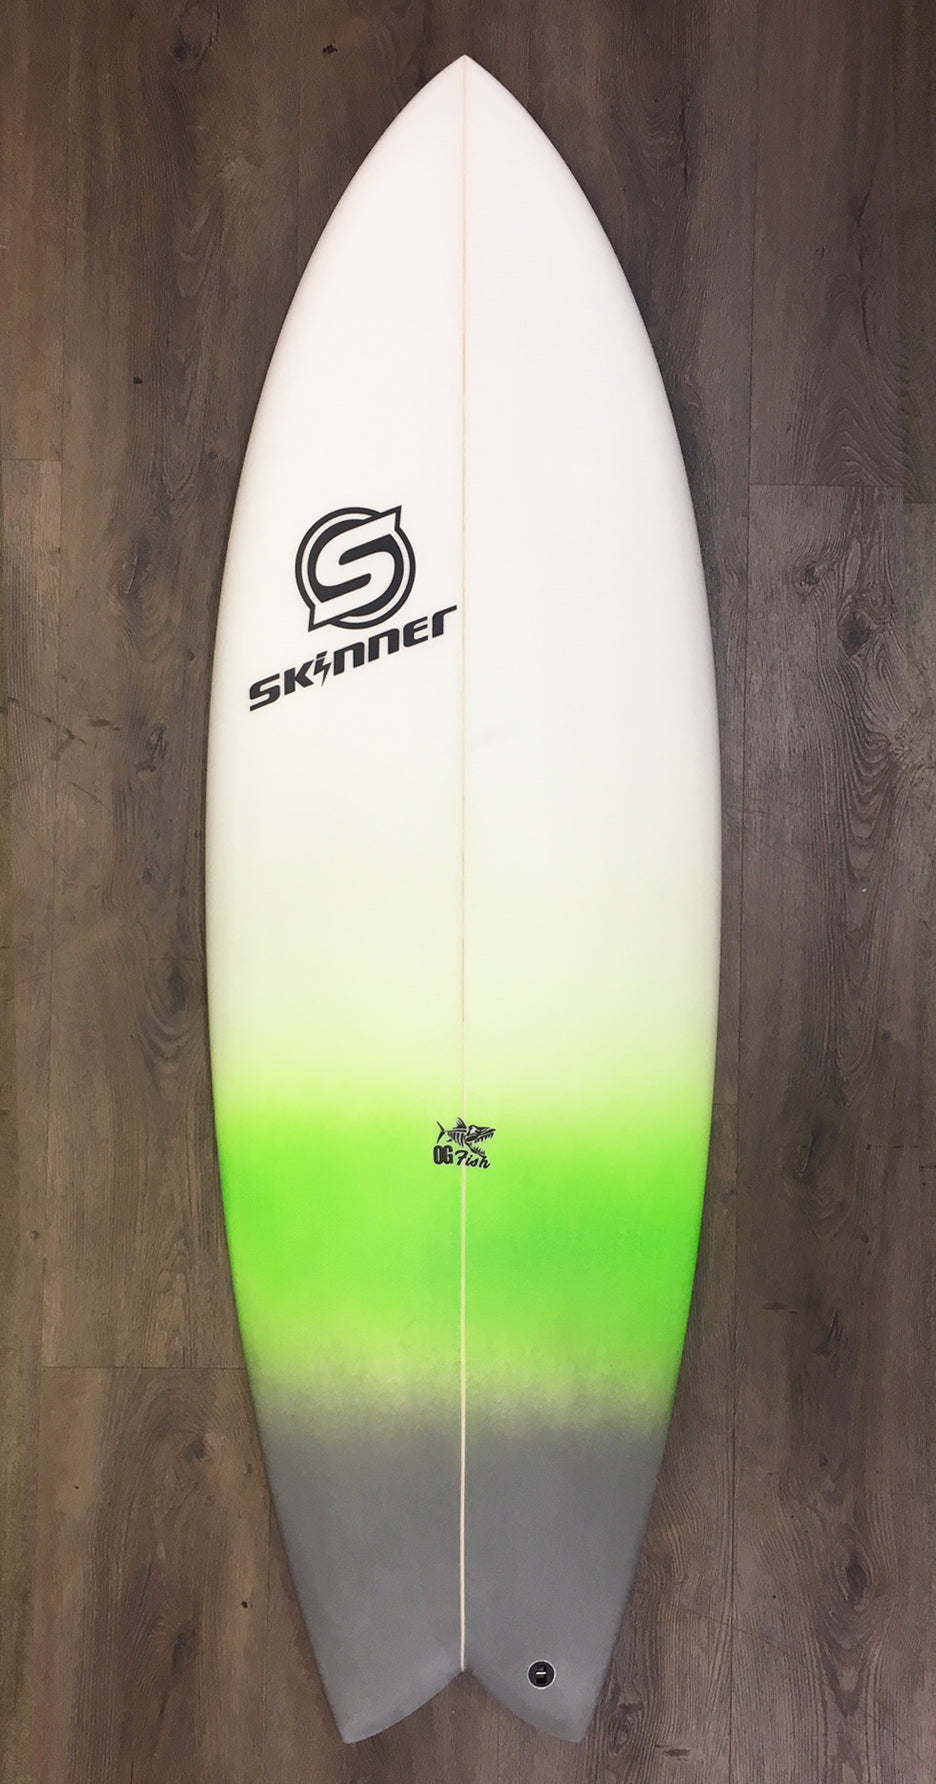 SOLD Skinner 5'6 x 20.9" x 32.1 Liters Twin + Swallow Tail EPS Epoxy Surfboard Surfboard